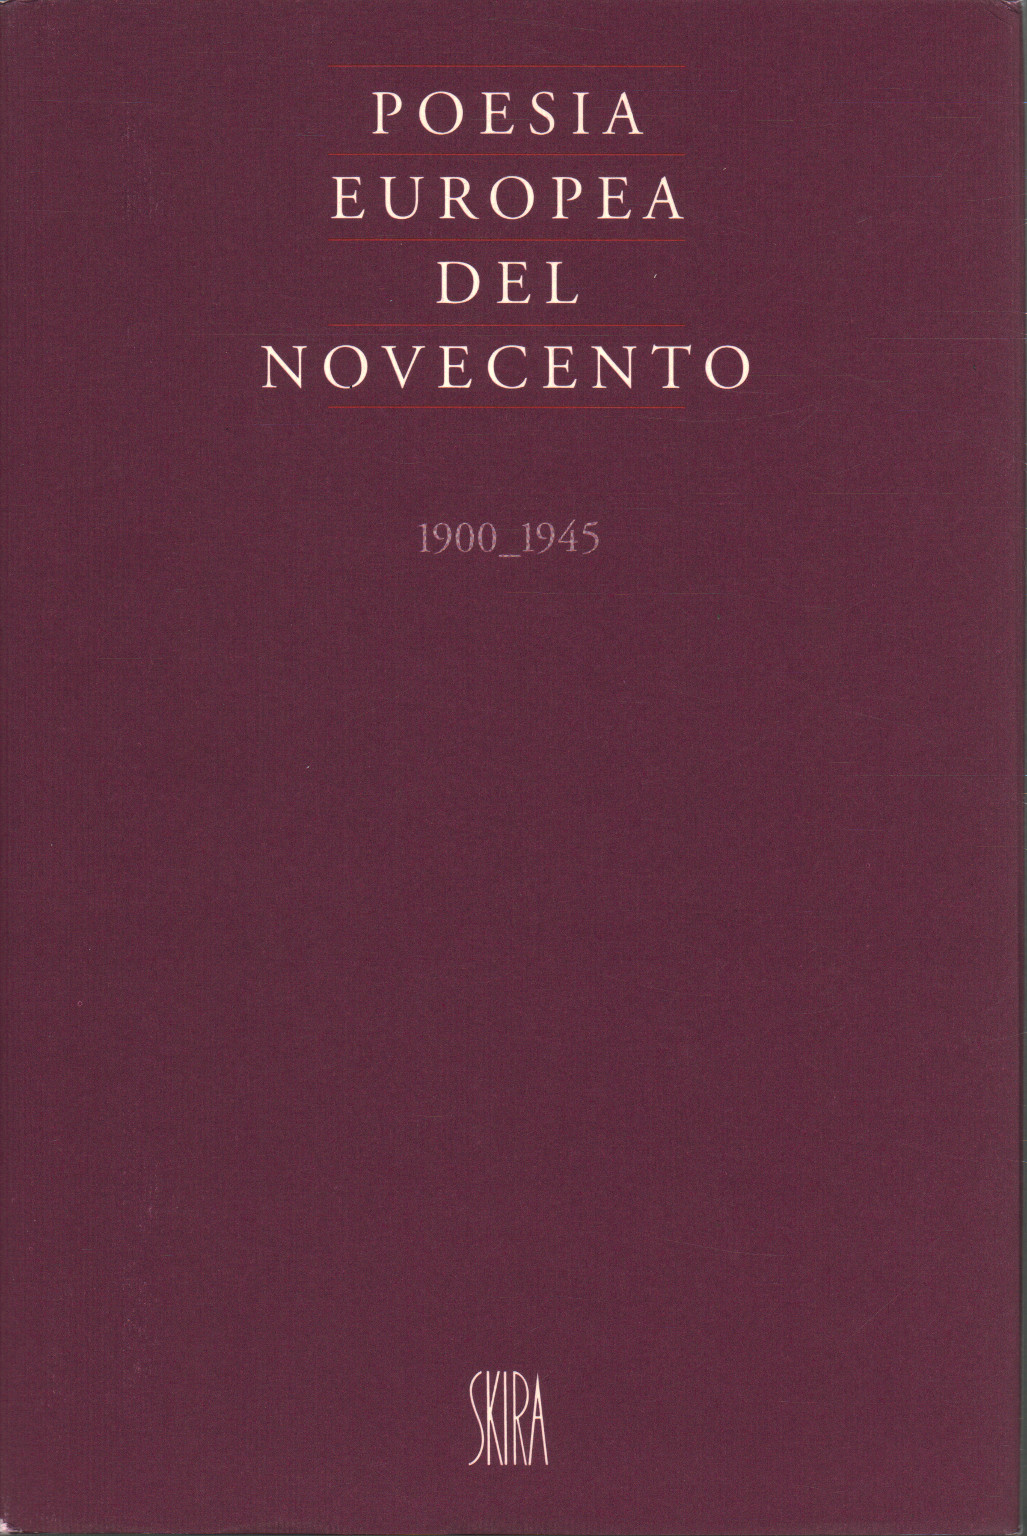 European poetry of the twentieth century 1900-1945, s.a.